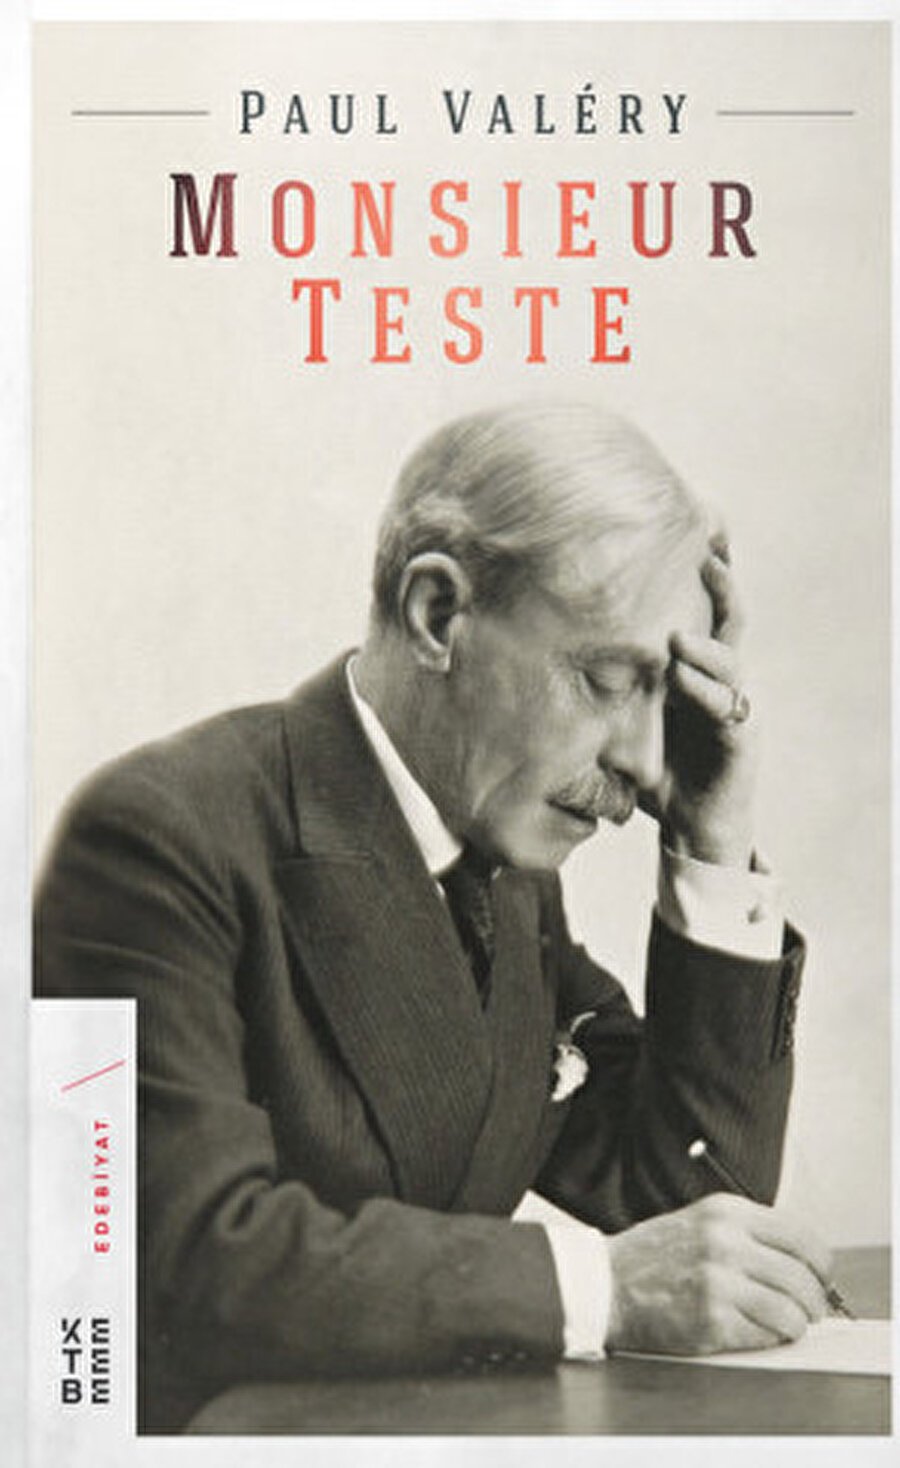 Monsieur Teste, Paul Valéry’nin bilincidir ve Valéry’nin uzun yıllar boyunca kendi kendisiyle yaptığı bir sohbettir.